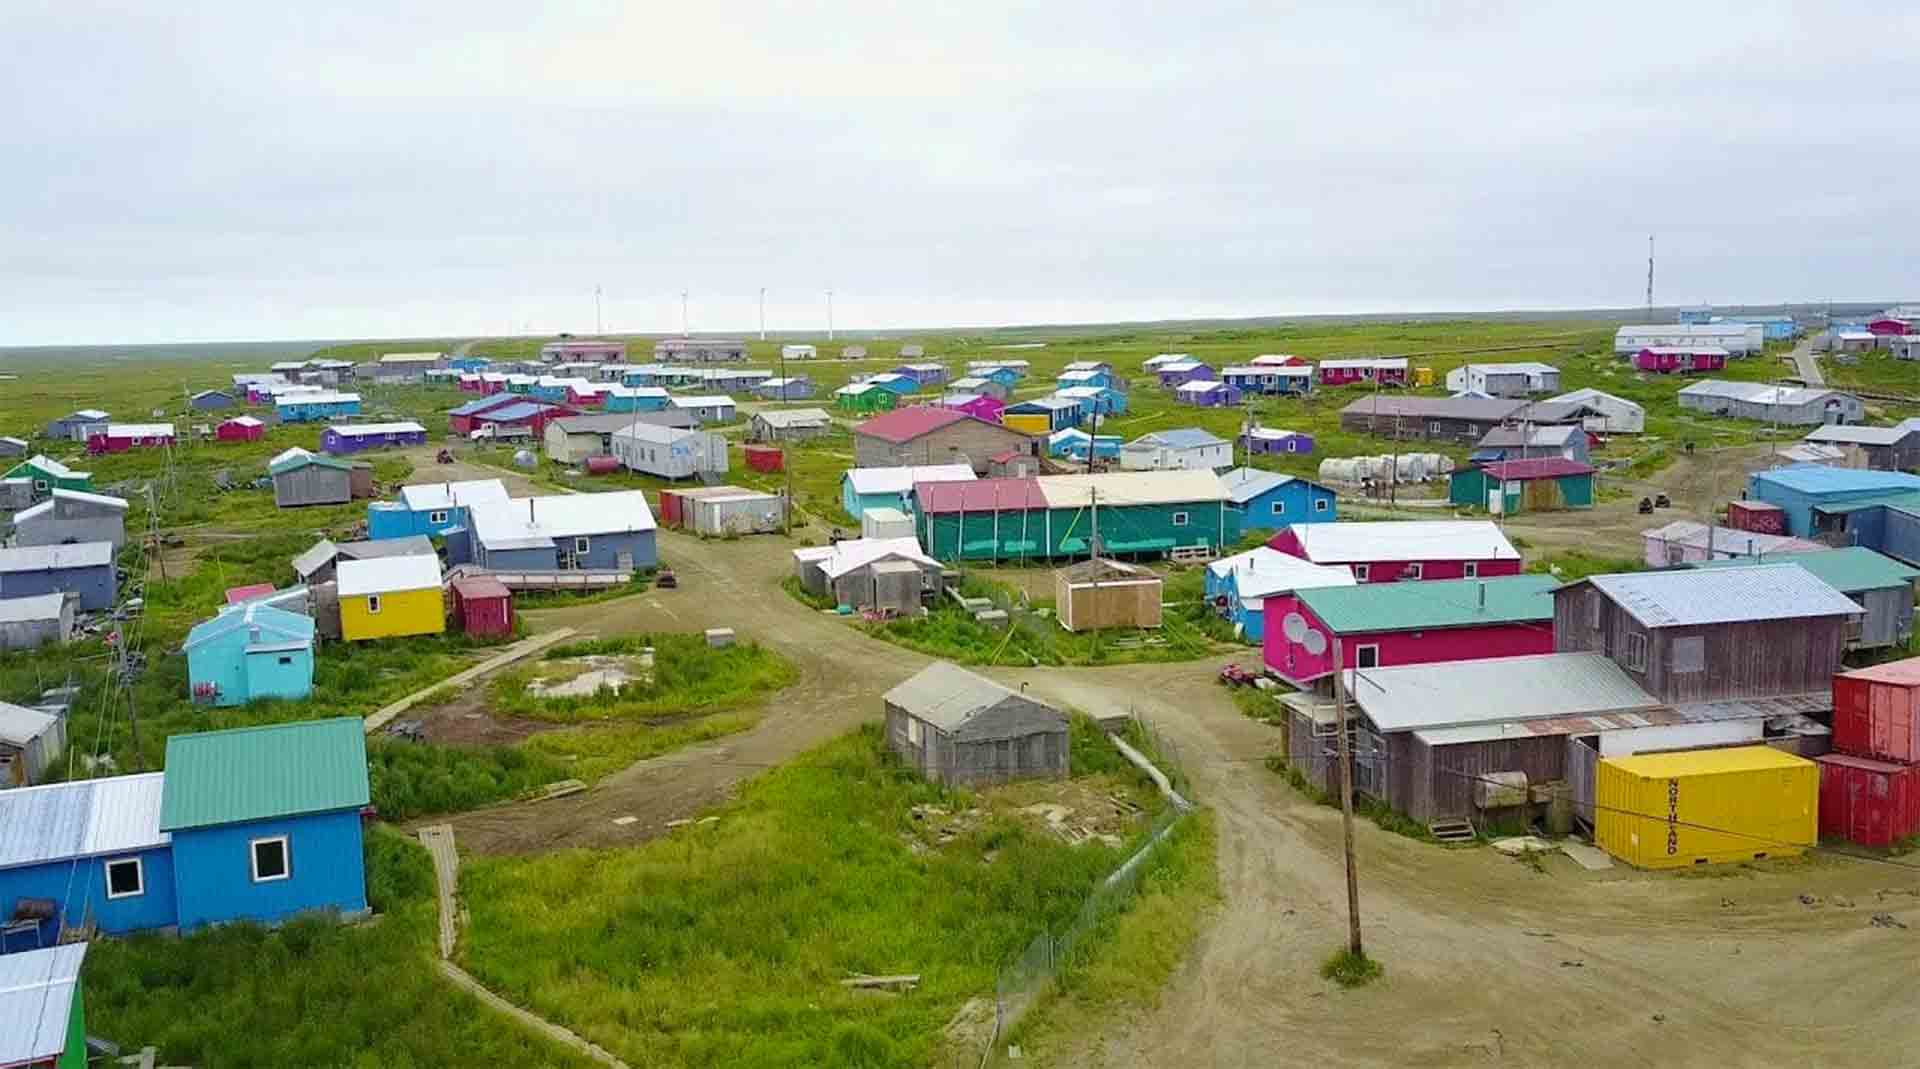 Rural Alaskan village